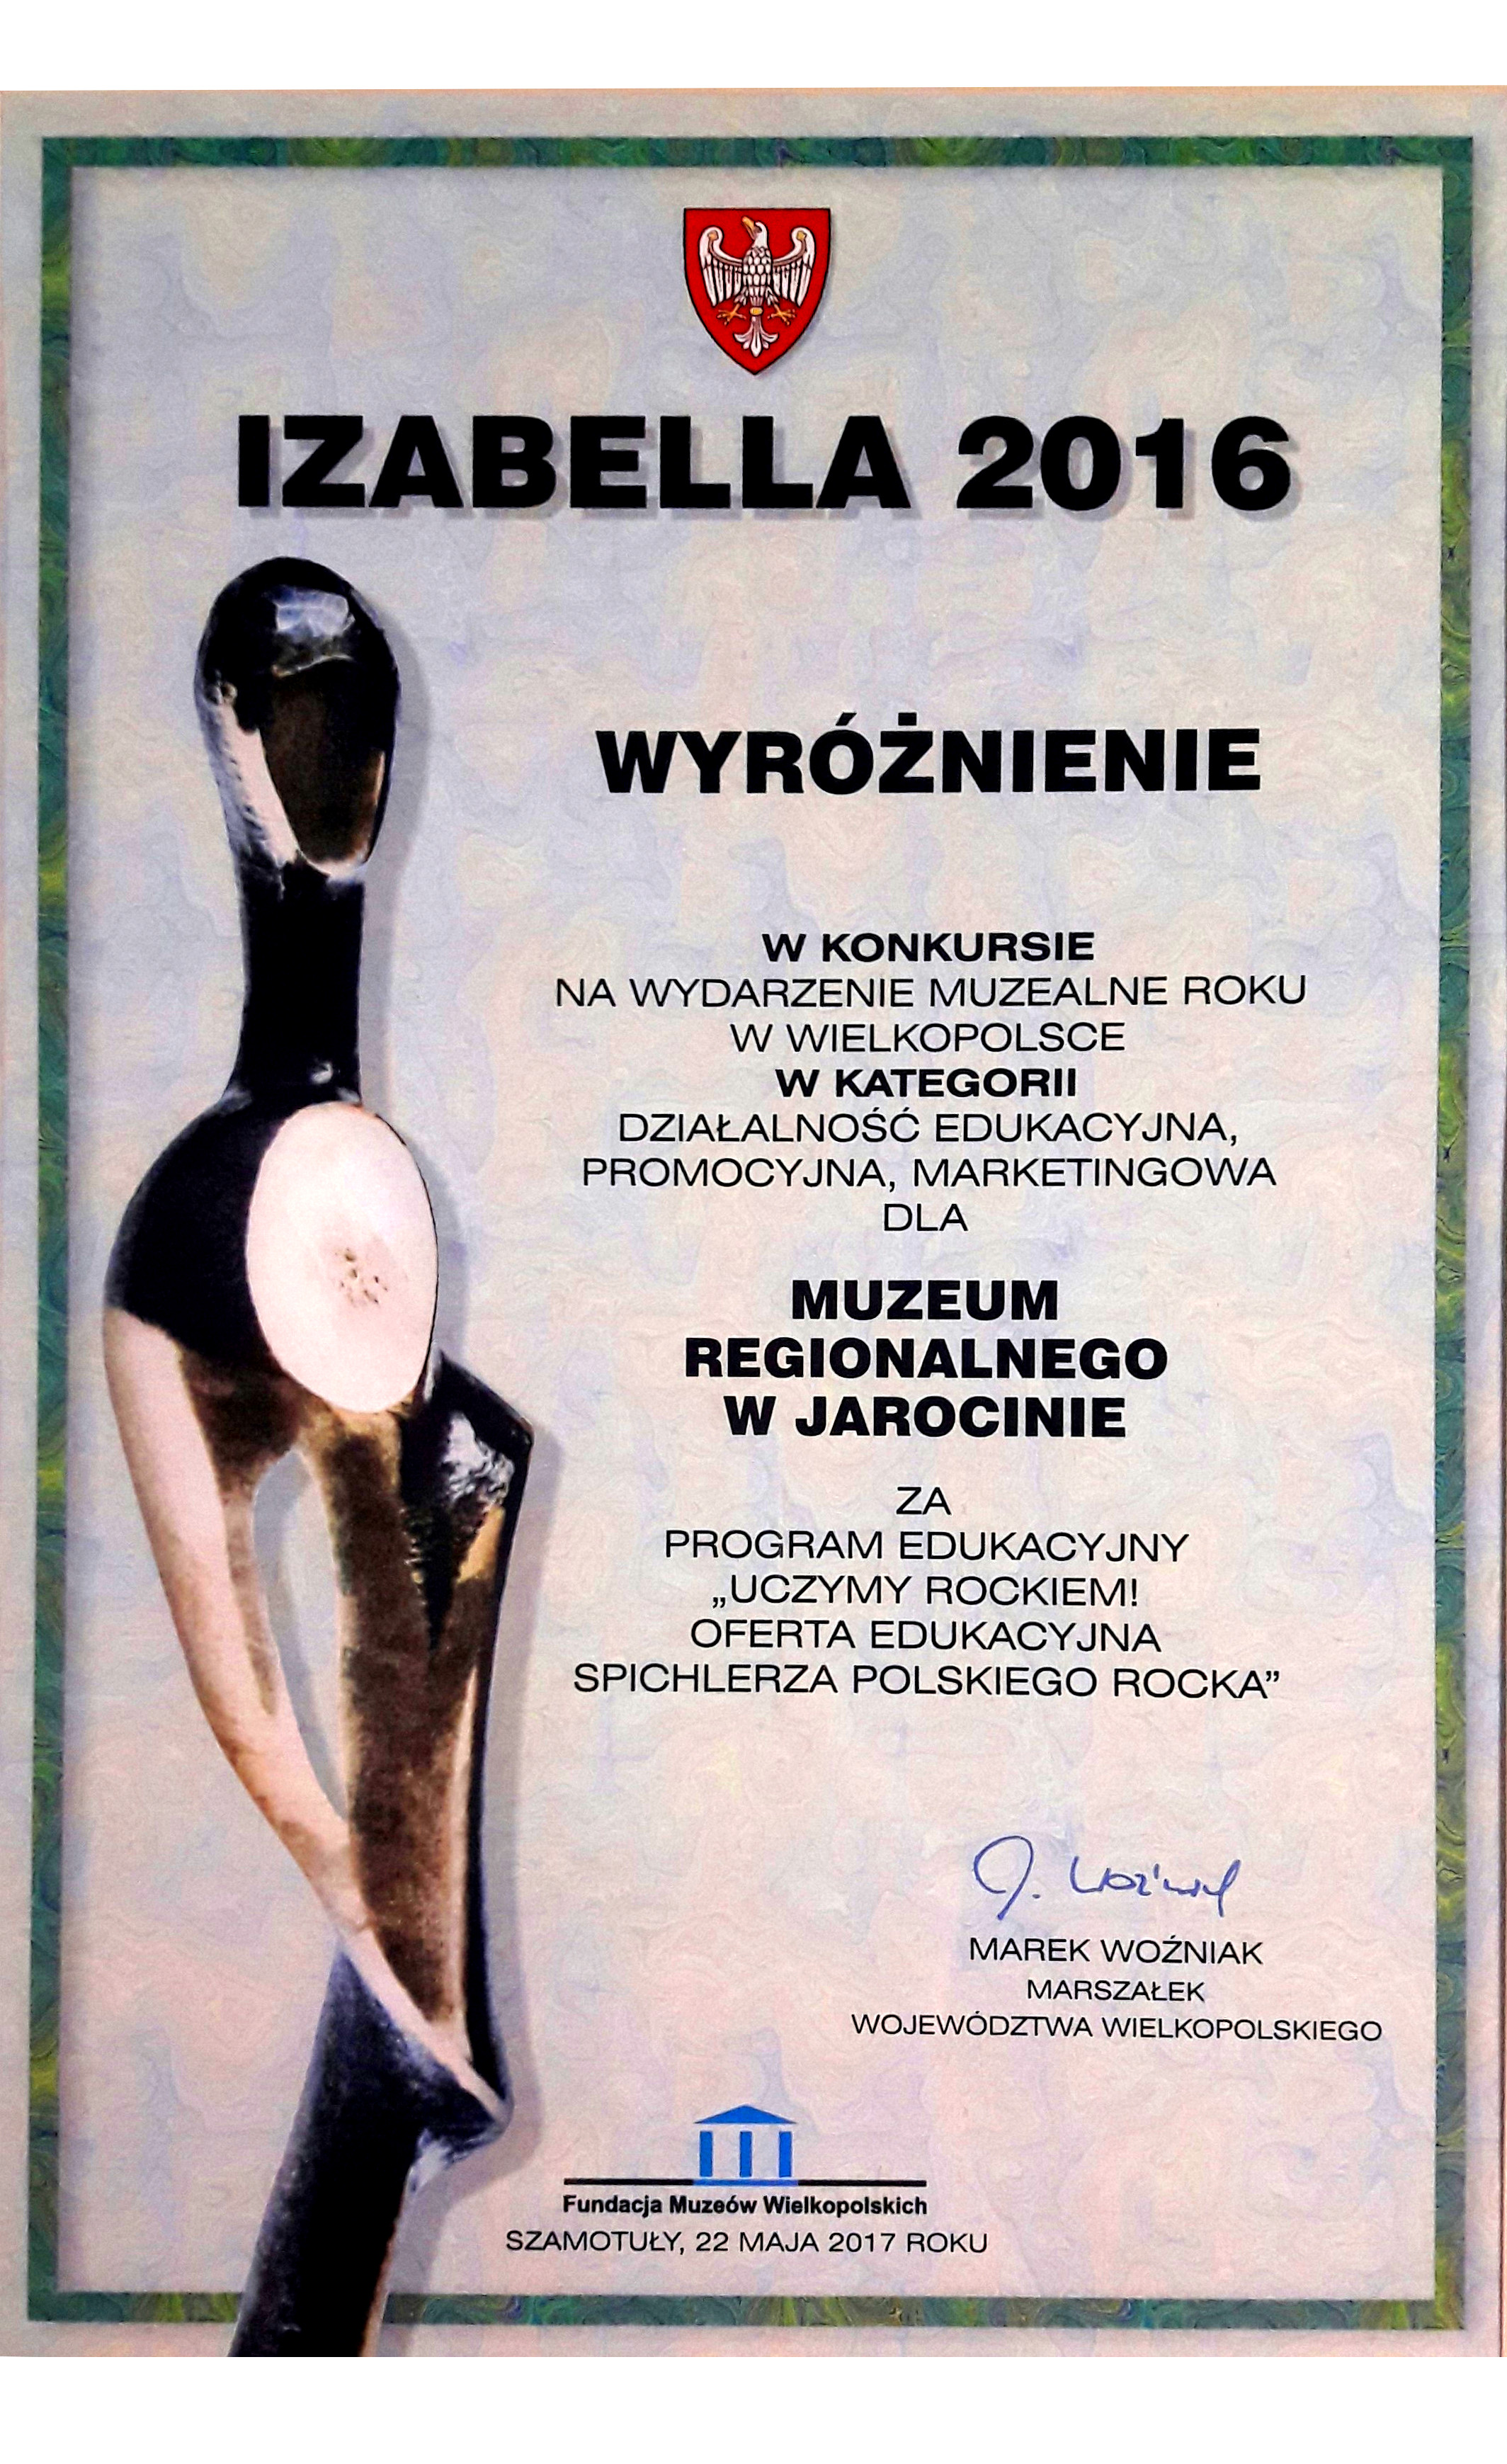 Spichlerz Polskiego Rocka wyróżniony w prestiżowym konkursie muzealnym „Izabella 2016”!